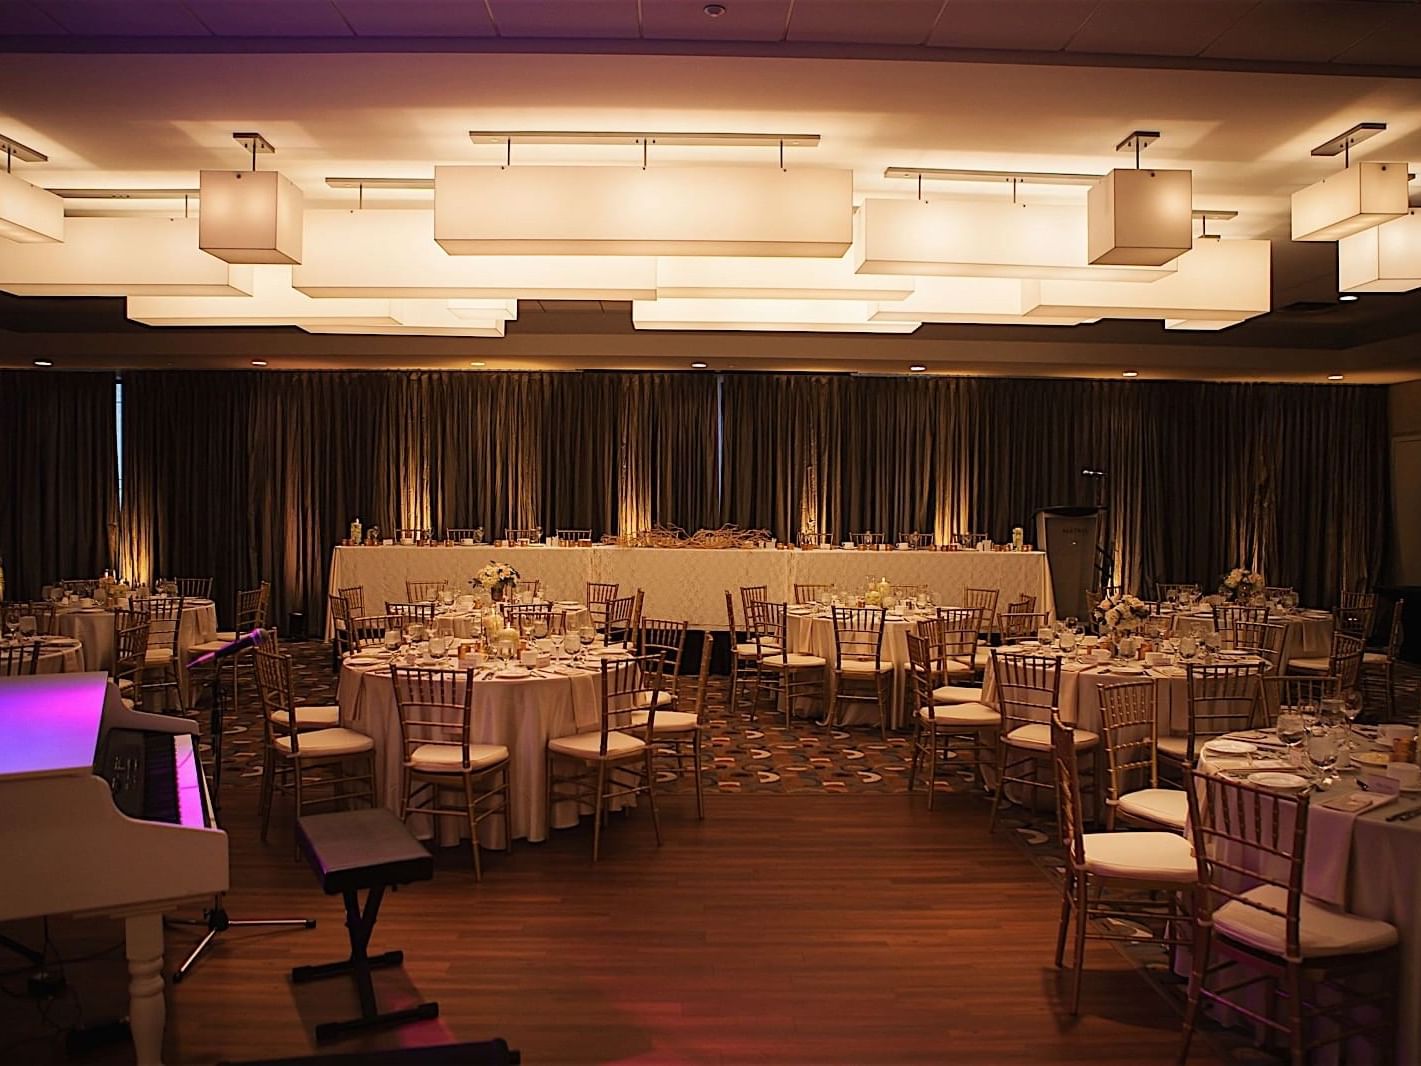 Banquet table setup in Quartz ballroom at Matrix Hotel